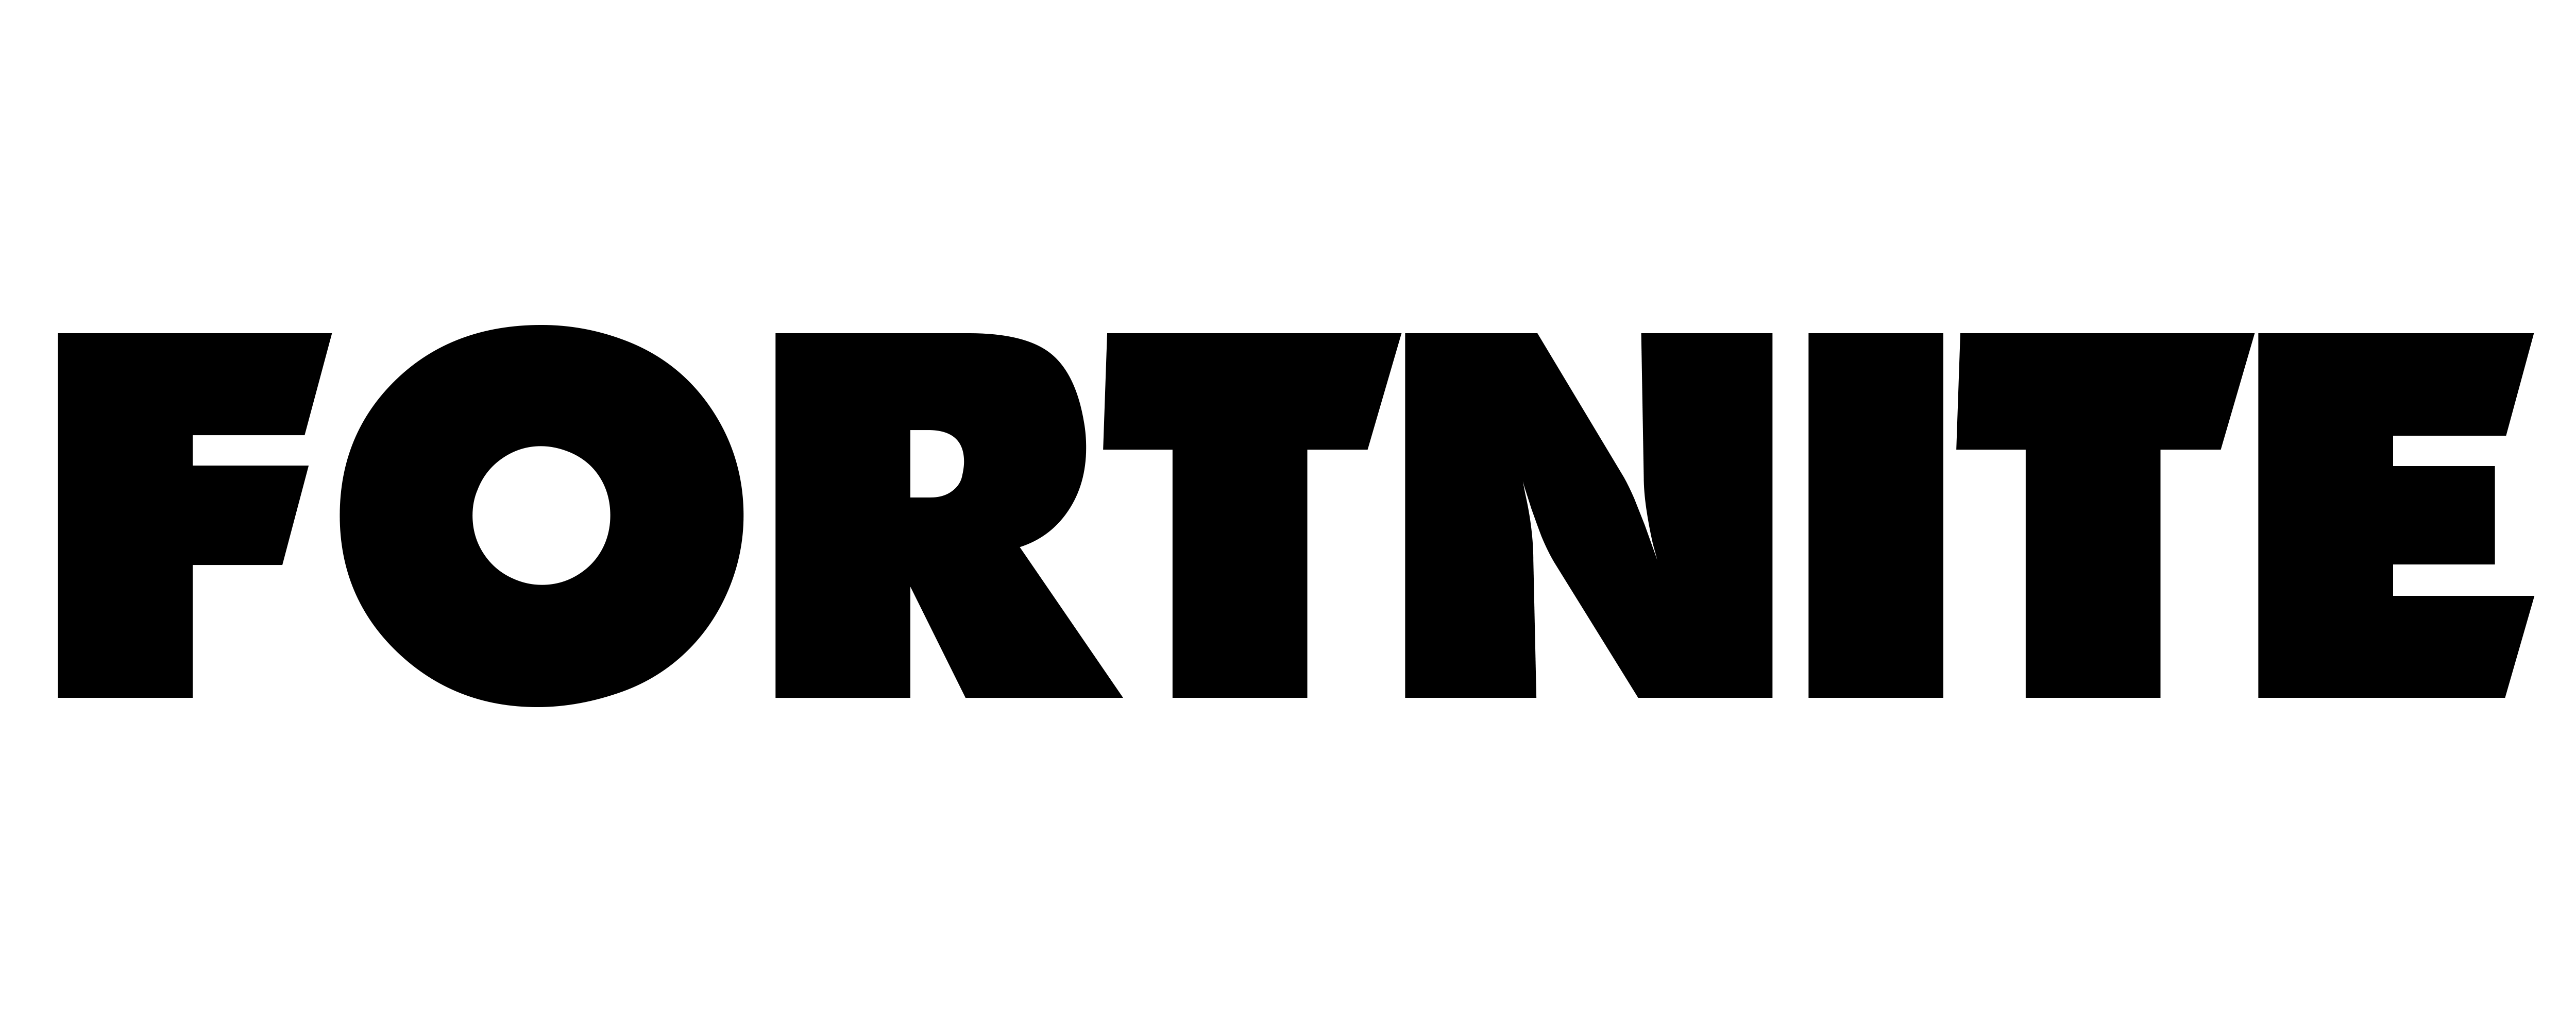 Fortnite Battle Royale Logo PNG Background Image